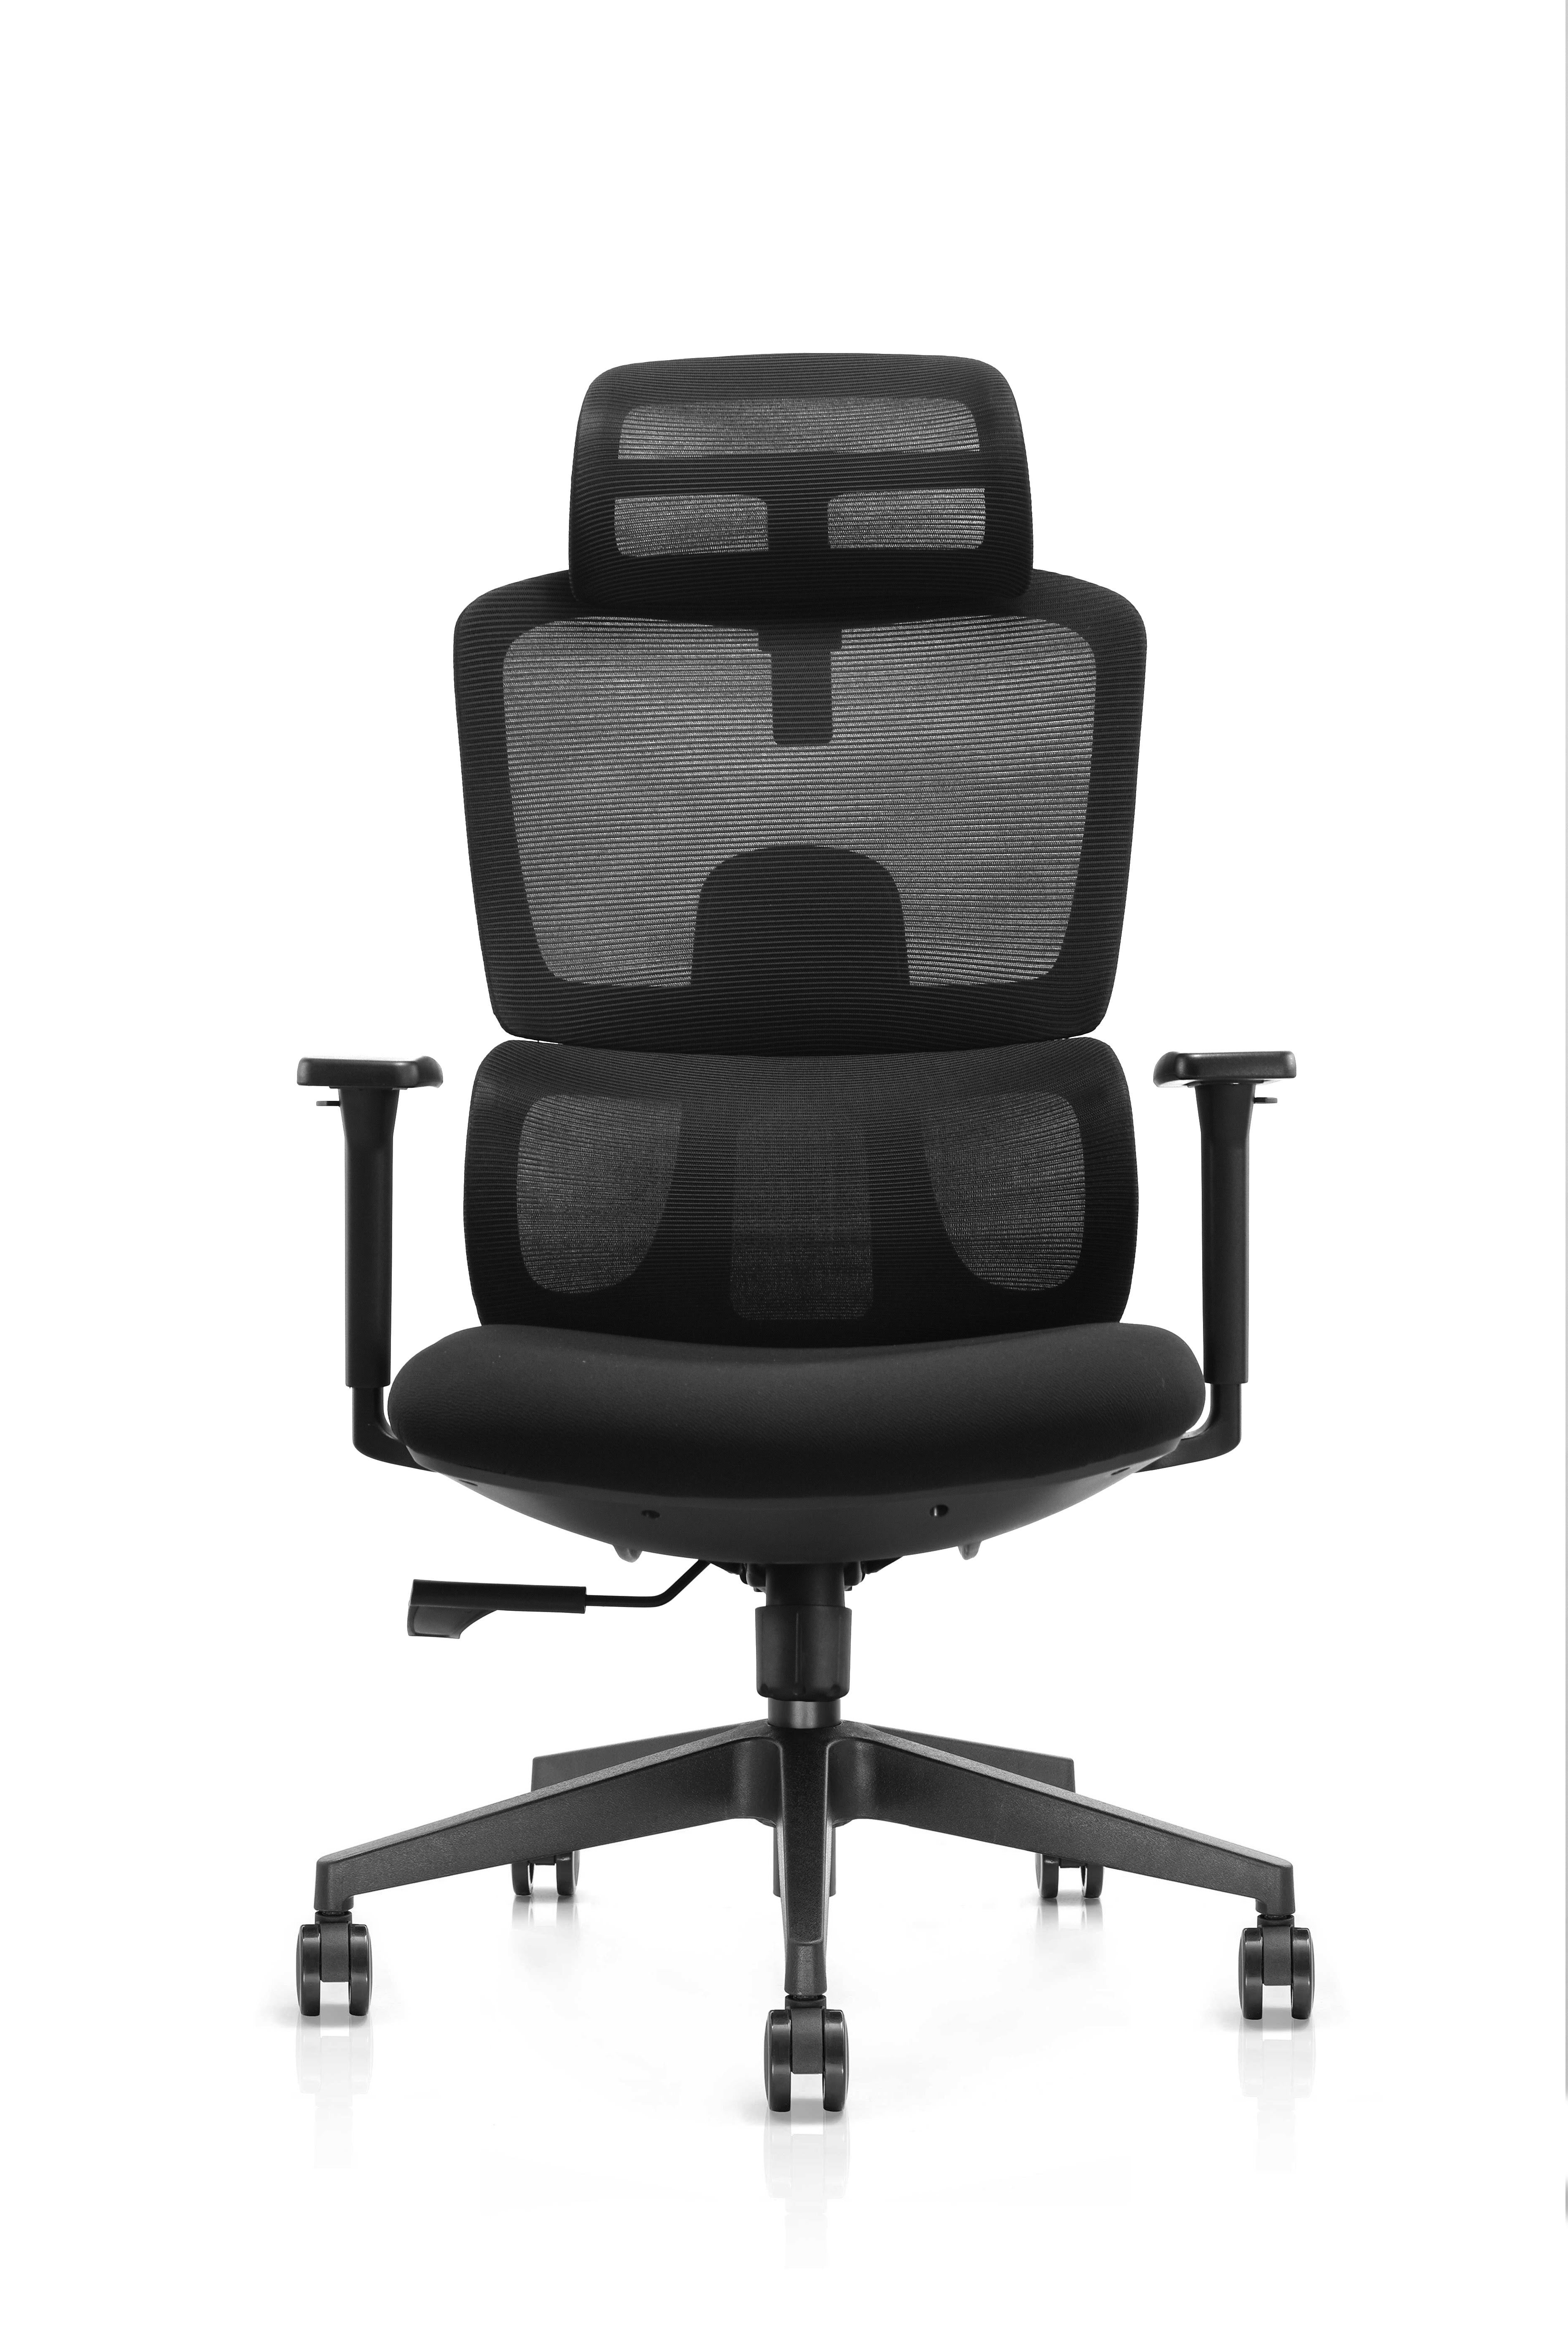 Xavier High Back Executive Cushion Office Chair With Aluminum Base And 3D Armrest- Black